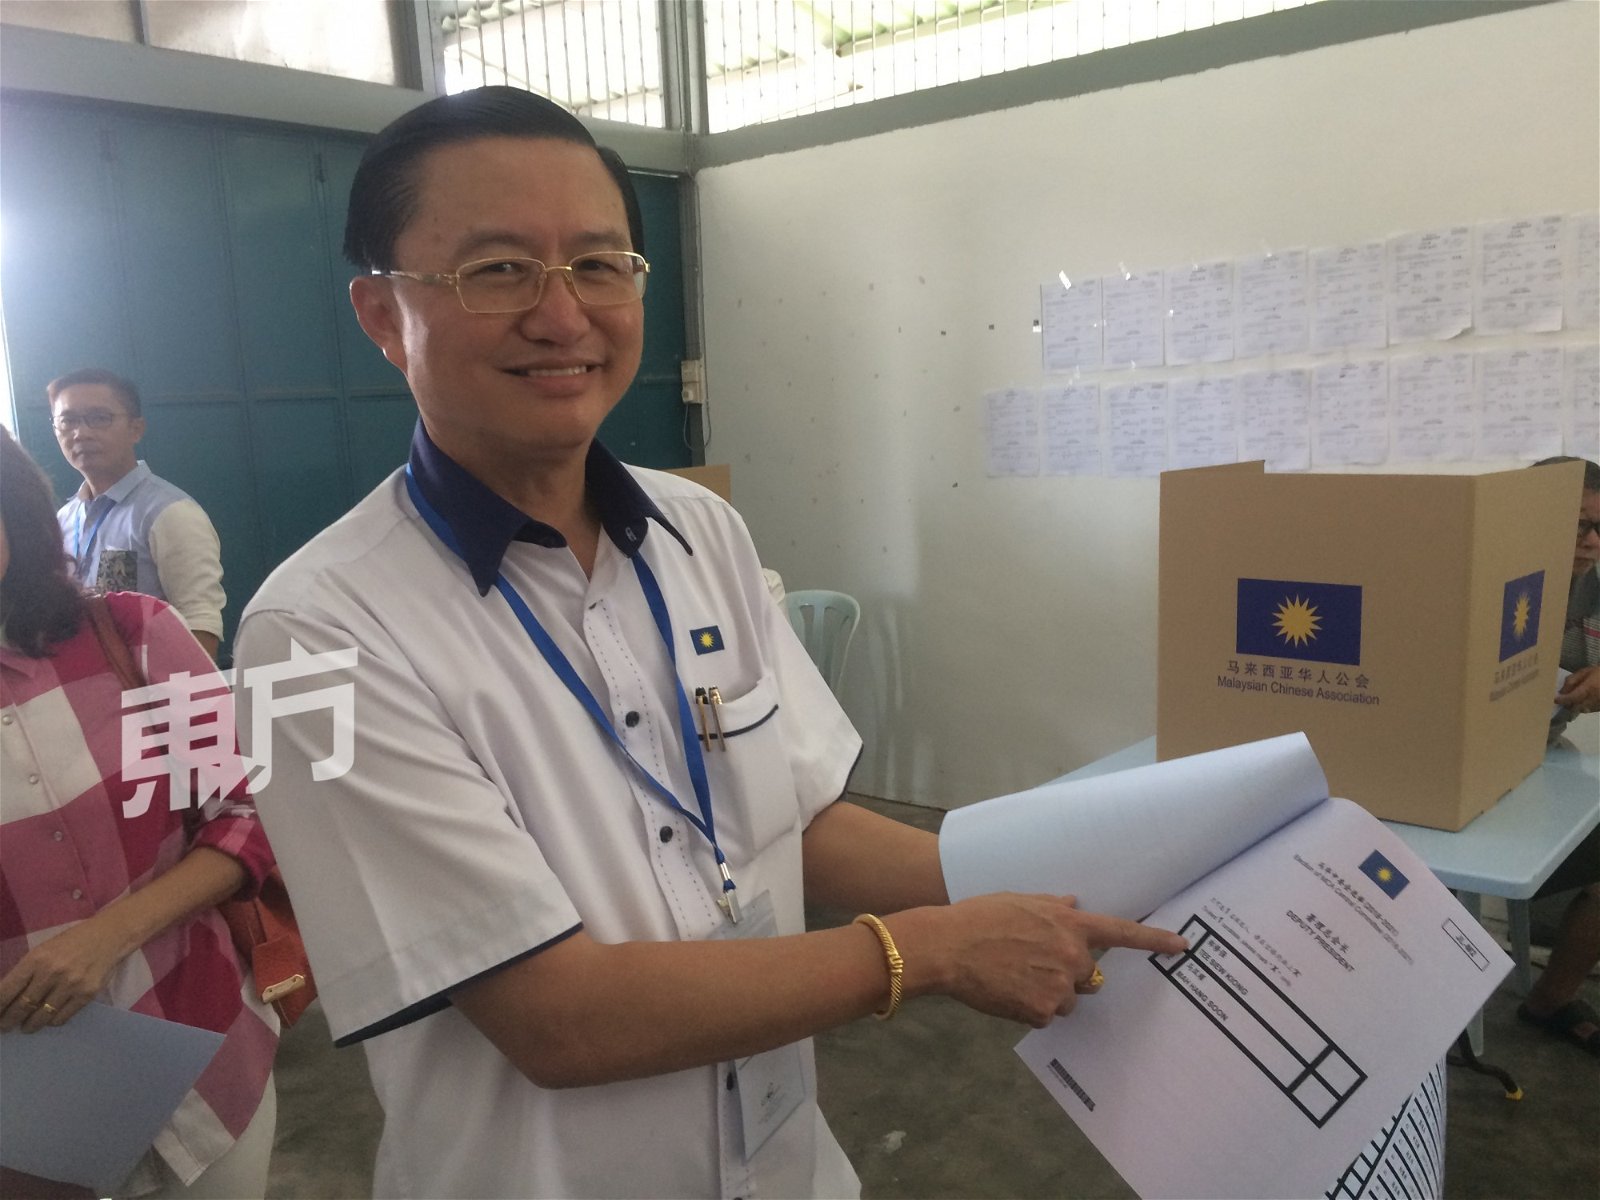 郑修强向记者展示，本身在选票上的名字。